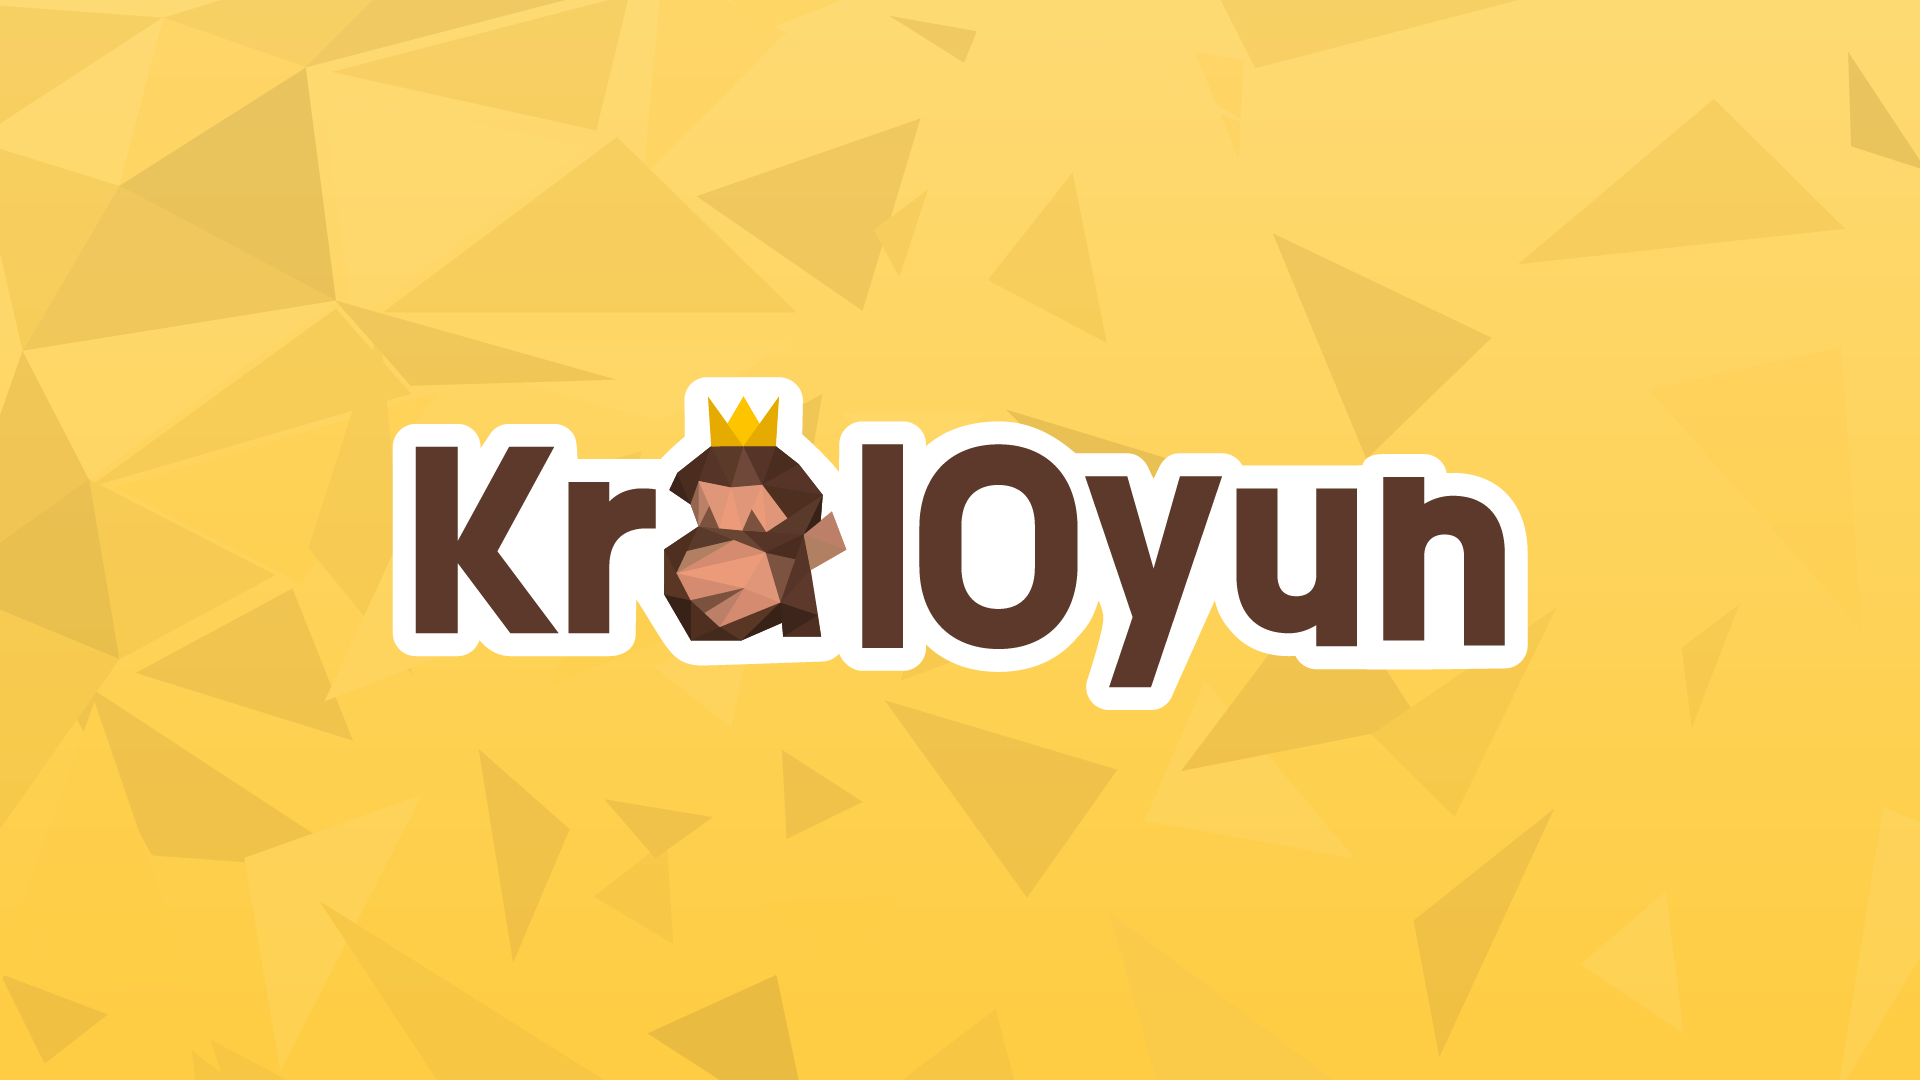 m.kraloyun.com